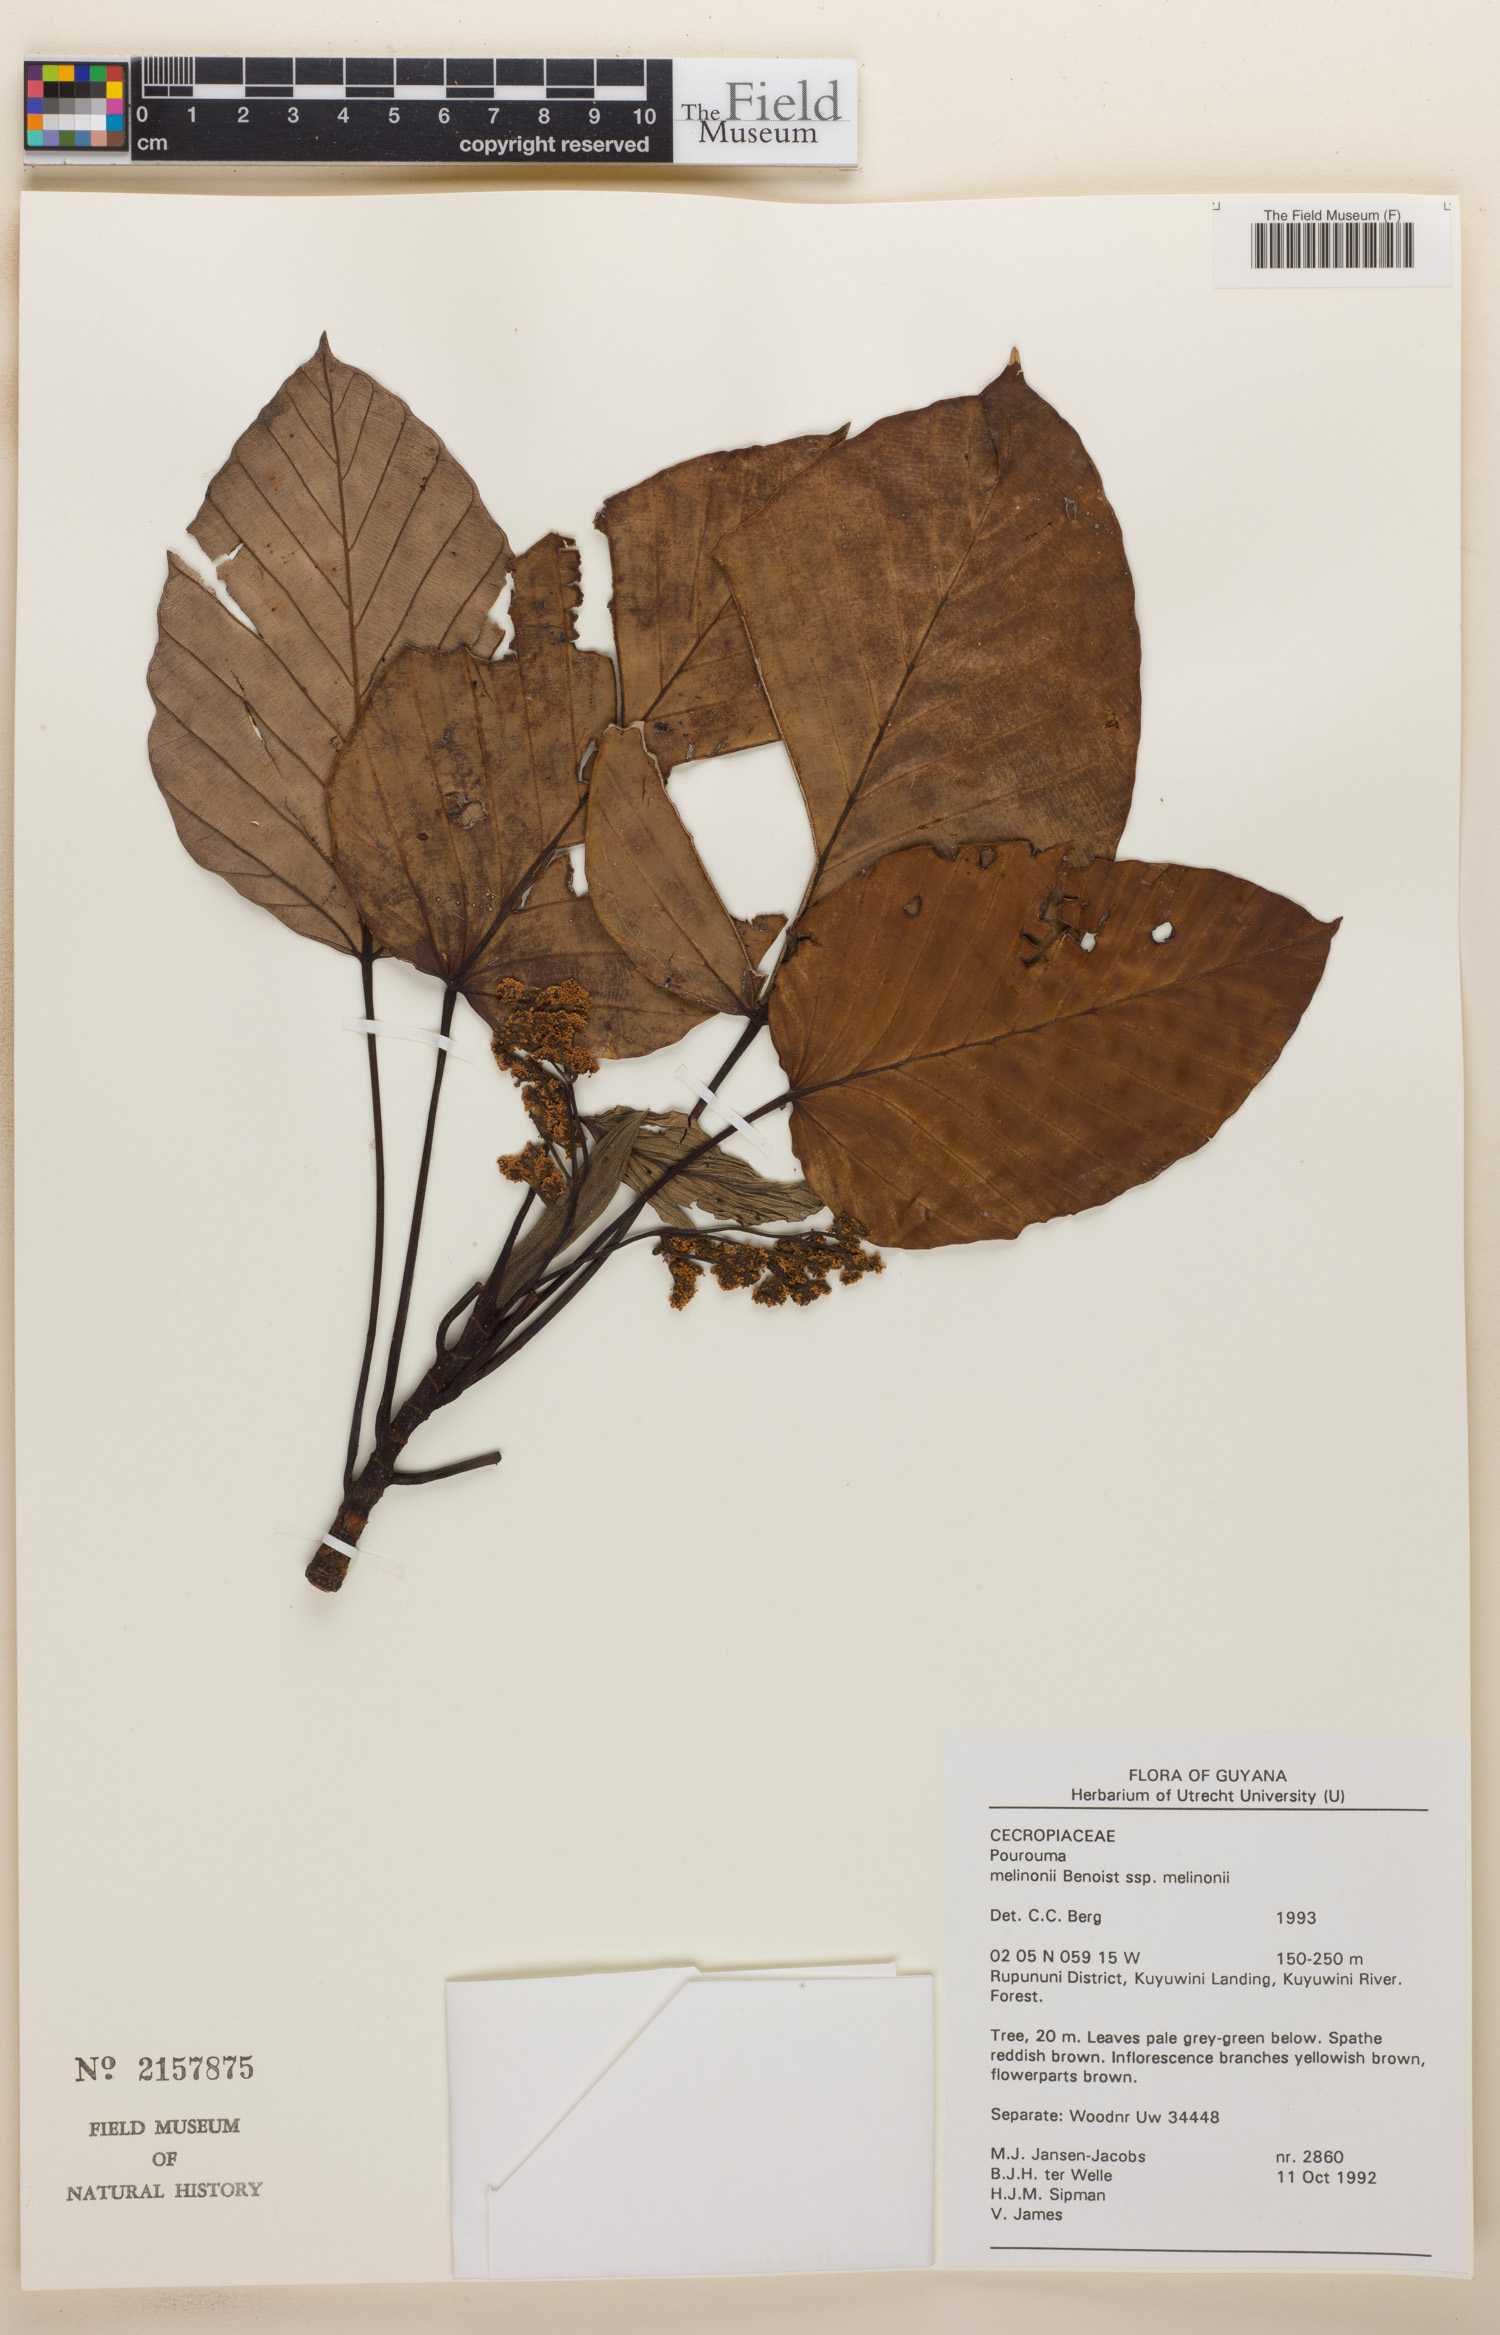 Pourouma tomentosa subsp. maroniensis image